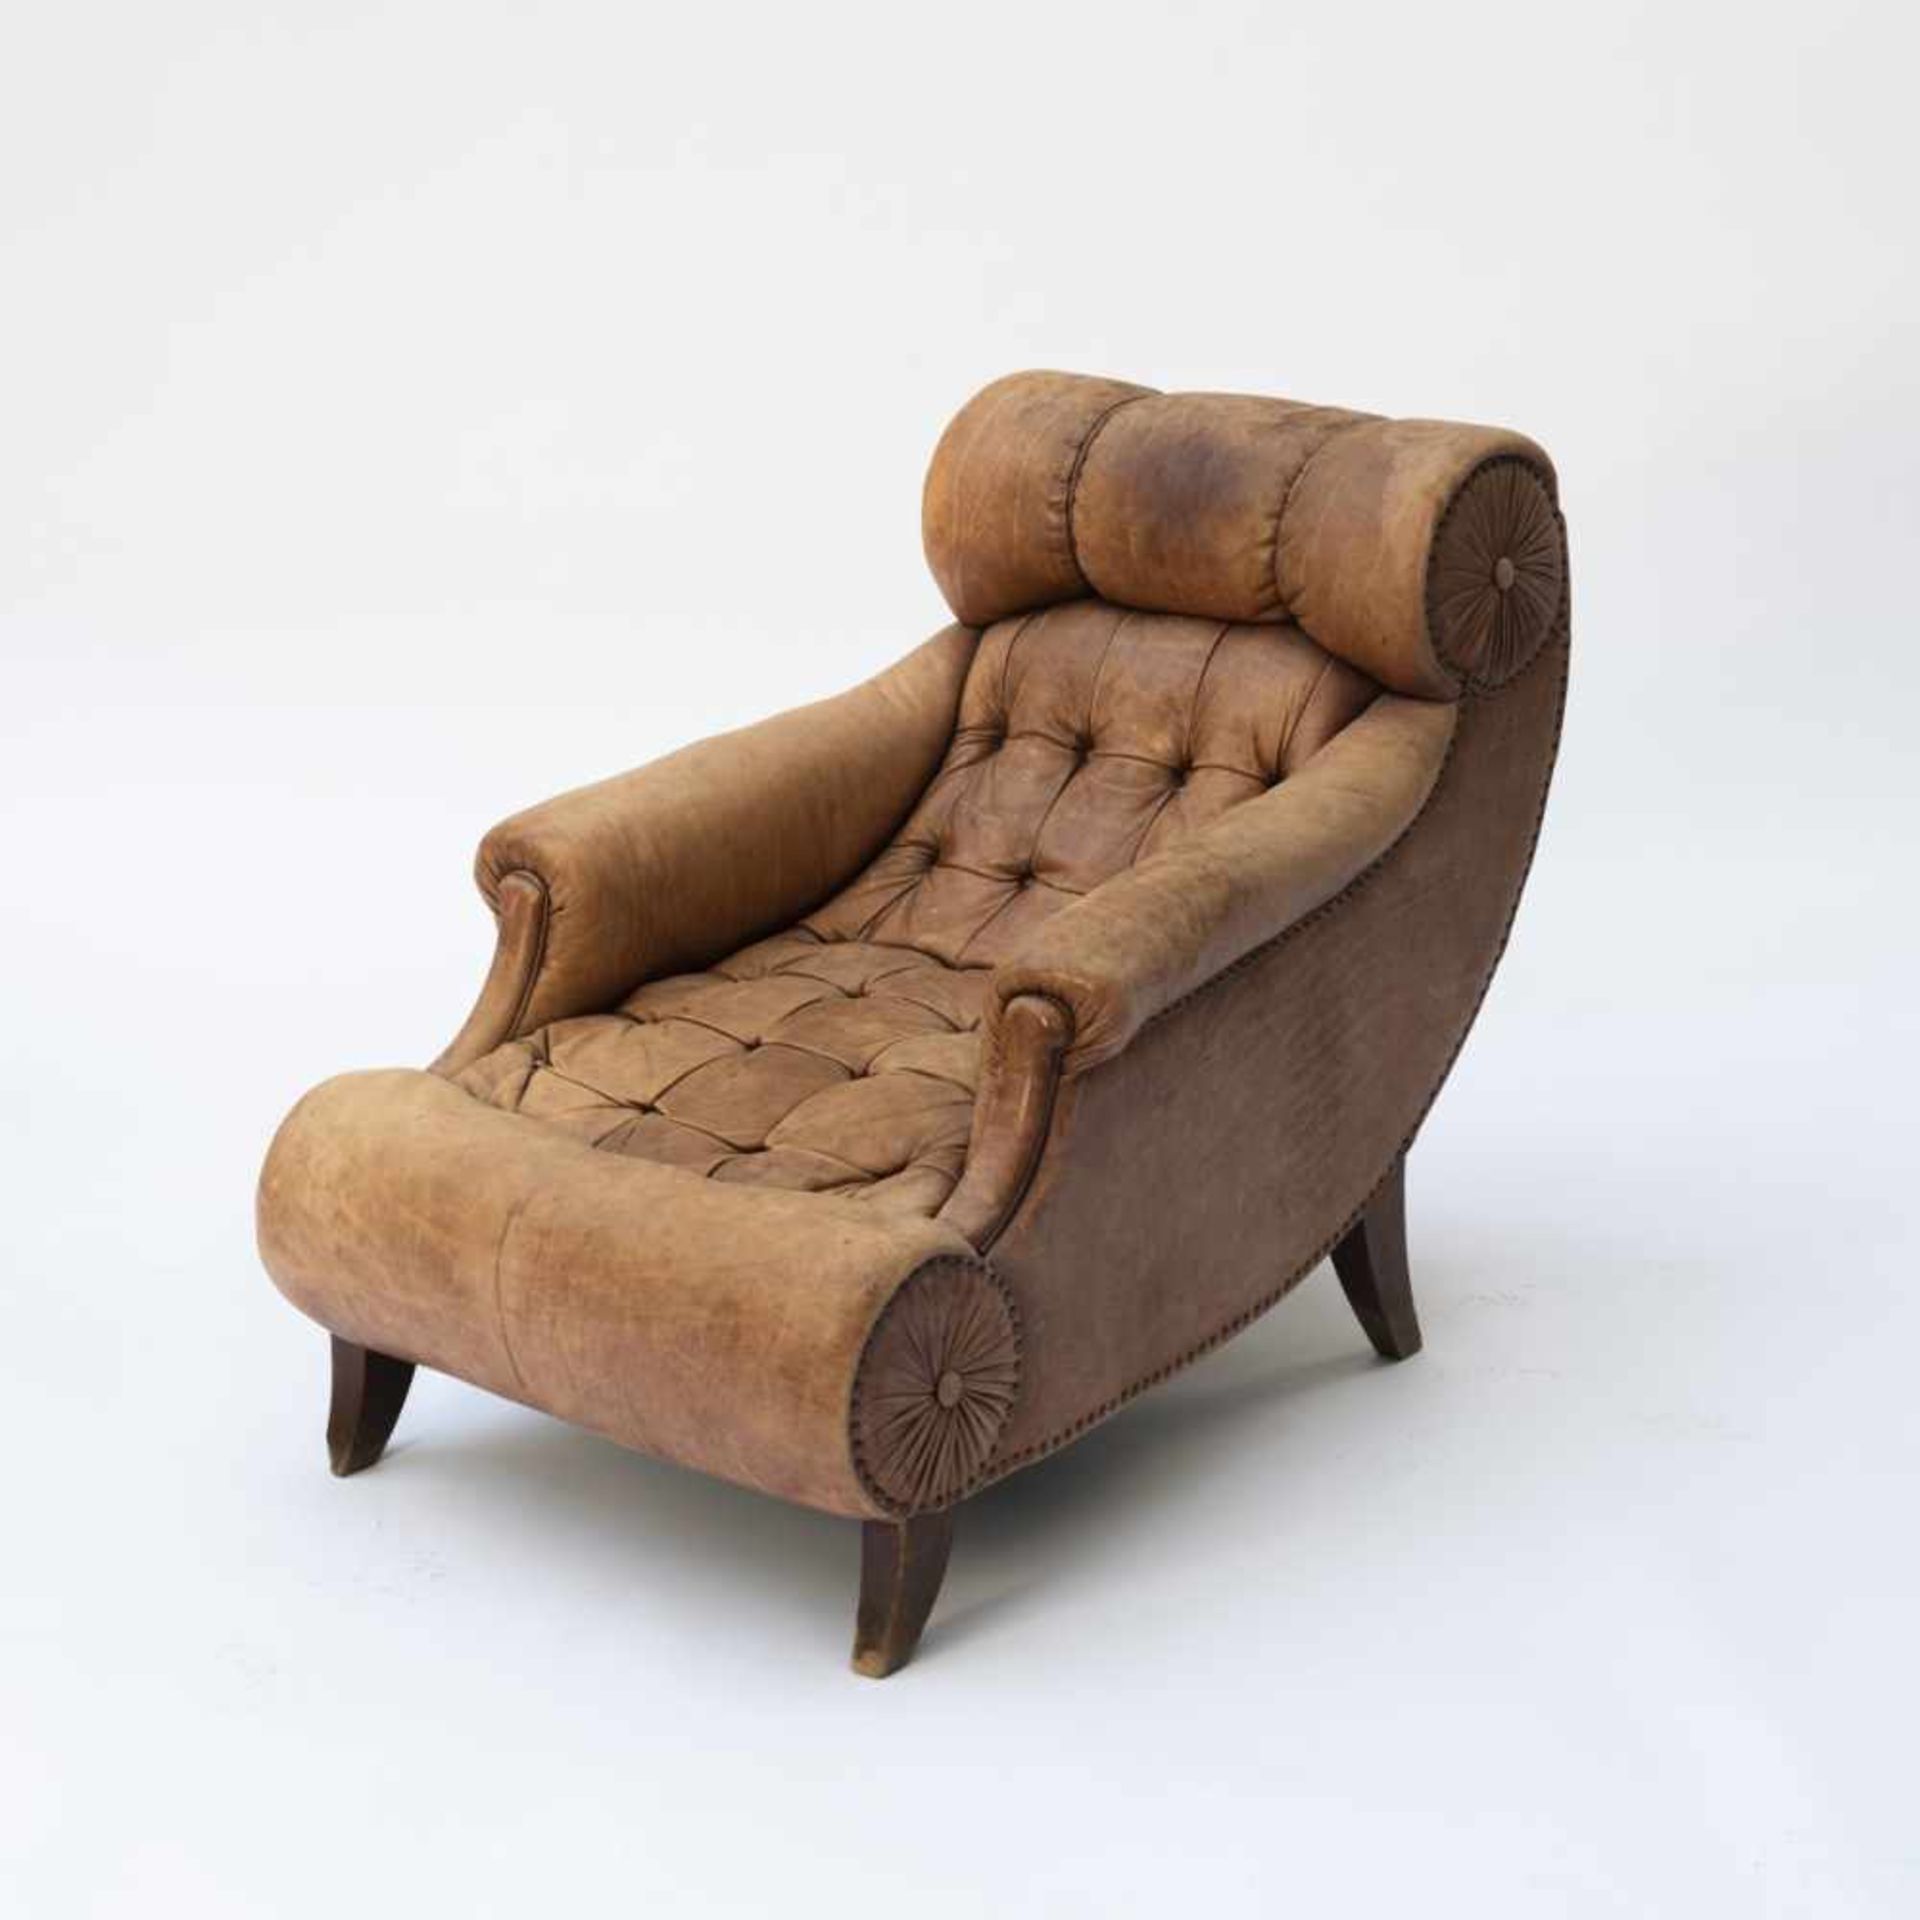 Adolf Loos (used by), 'Knieschwimmer' armchair, 1901'Knieschwimmer' armchair, 1901H. 84 cm, 76 x 108 - Bild 4 aus 10